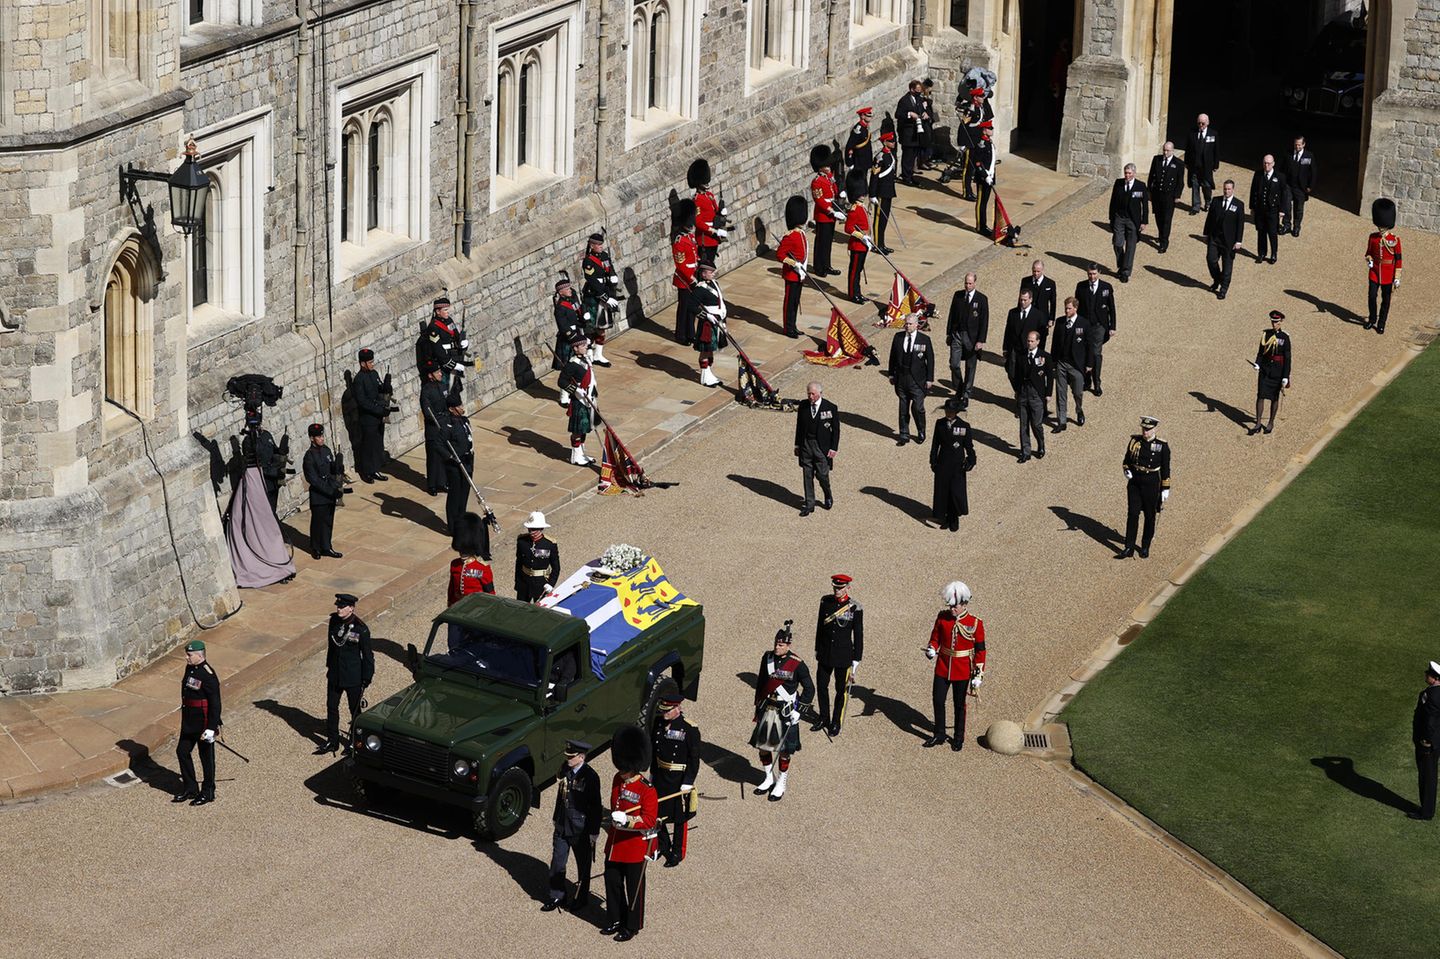 Die Prozession  Der Land Rover mit dem Leichnam von Prinz Philip ist losgefahren. Die Prozession zur St. George's Chapel beginnt.